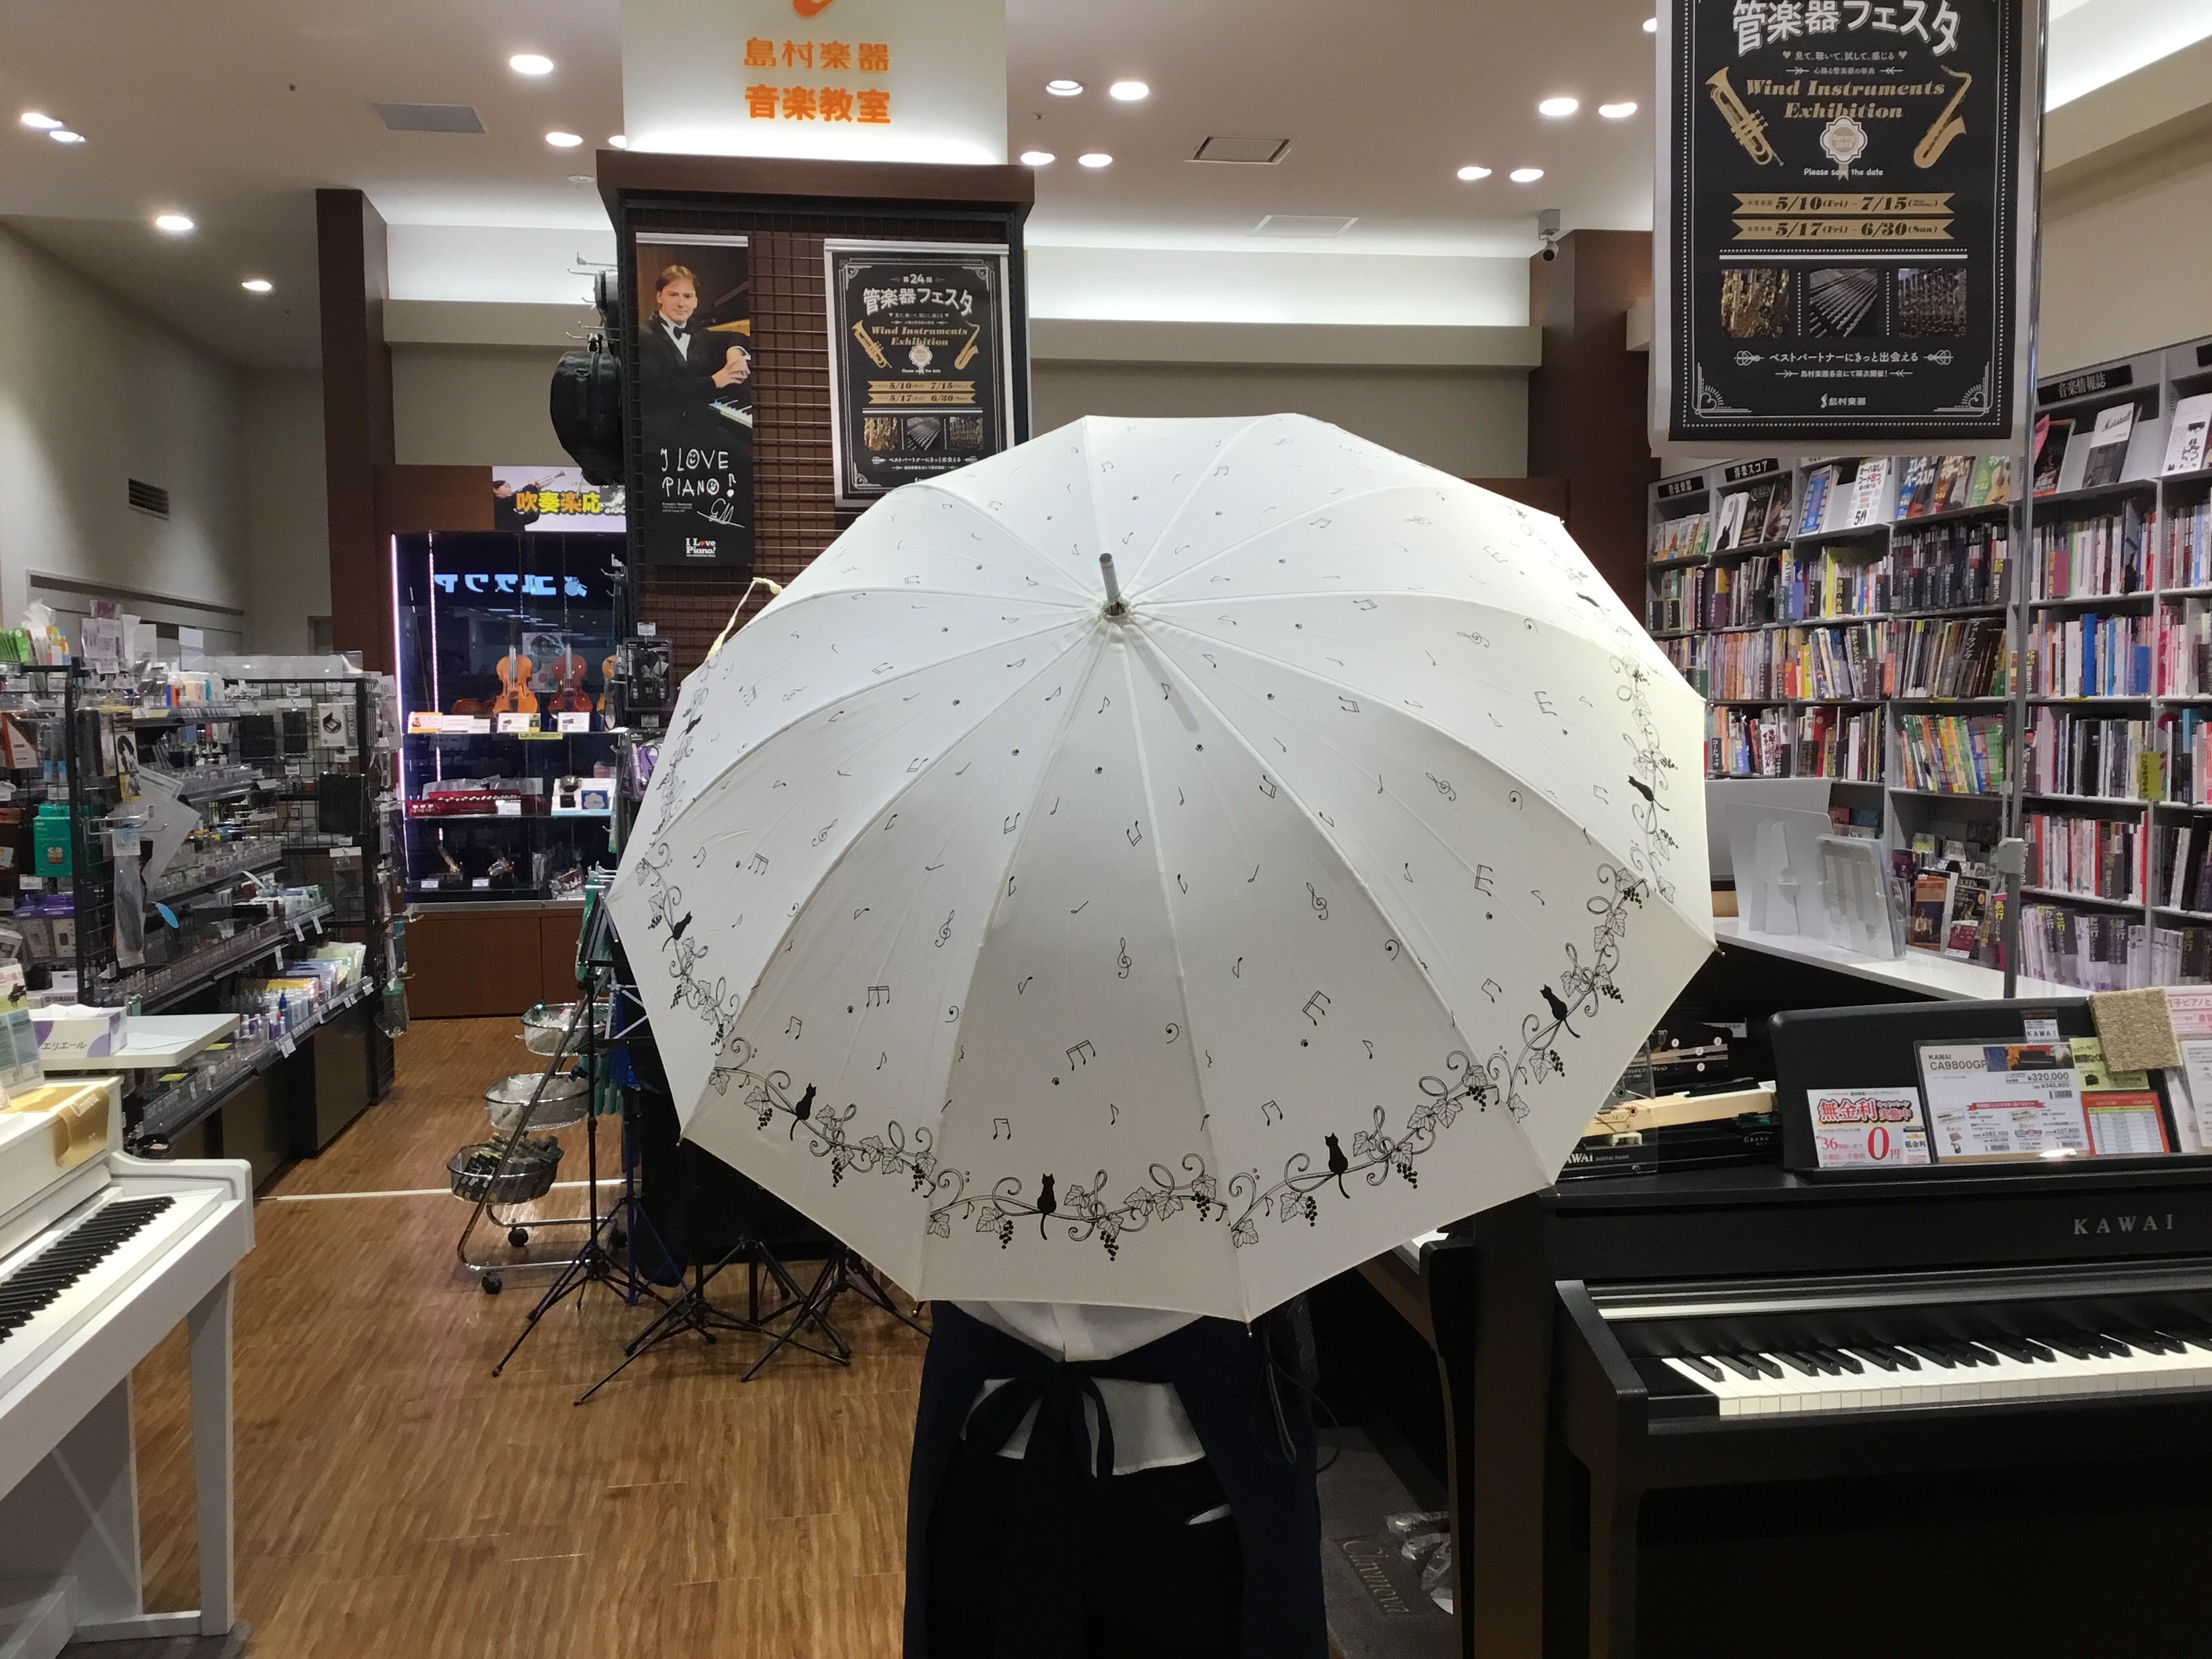 雑貨 これからの季節にピッタリ 可愛い傘が入荷しました ららぽーと和泉店 店舗情報 島村楽器